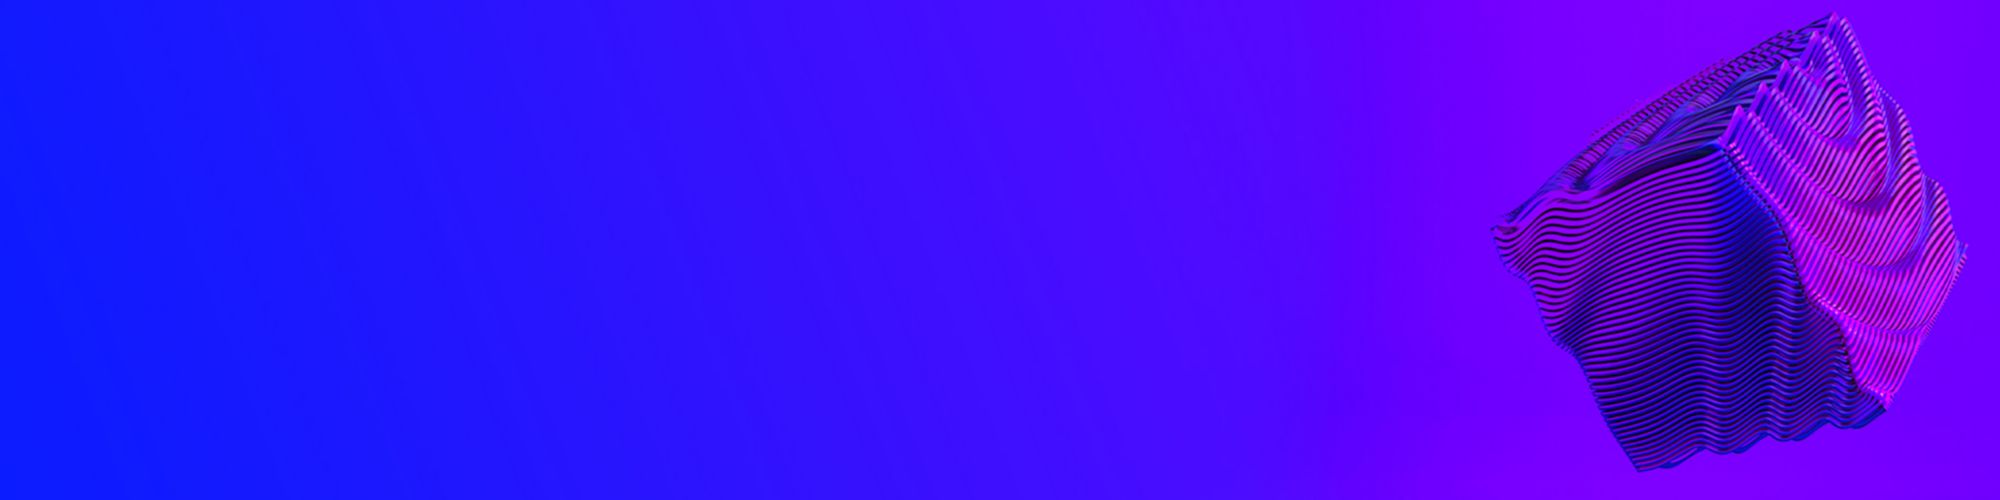 Purple blue 3D cube